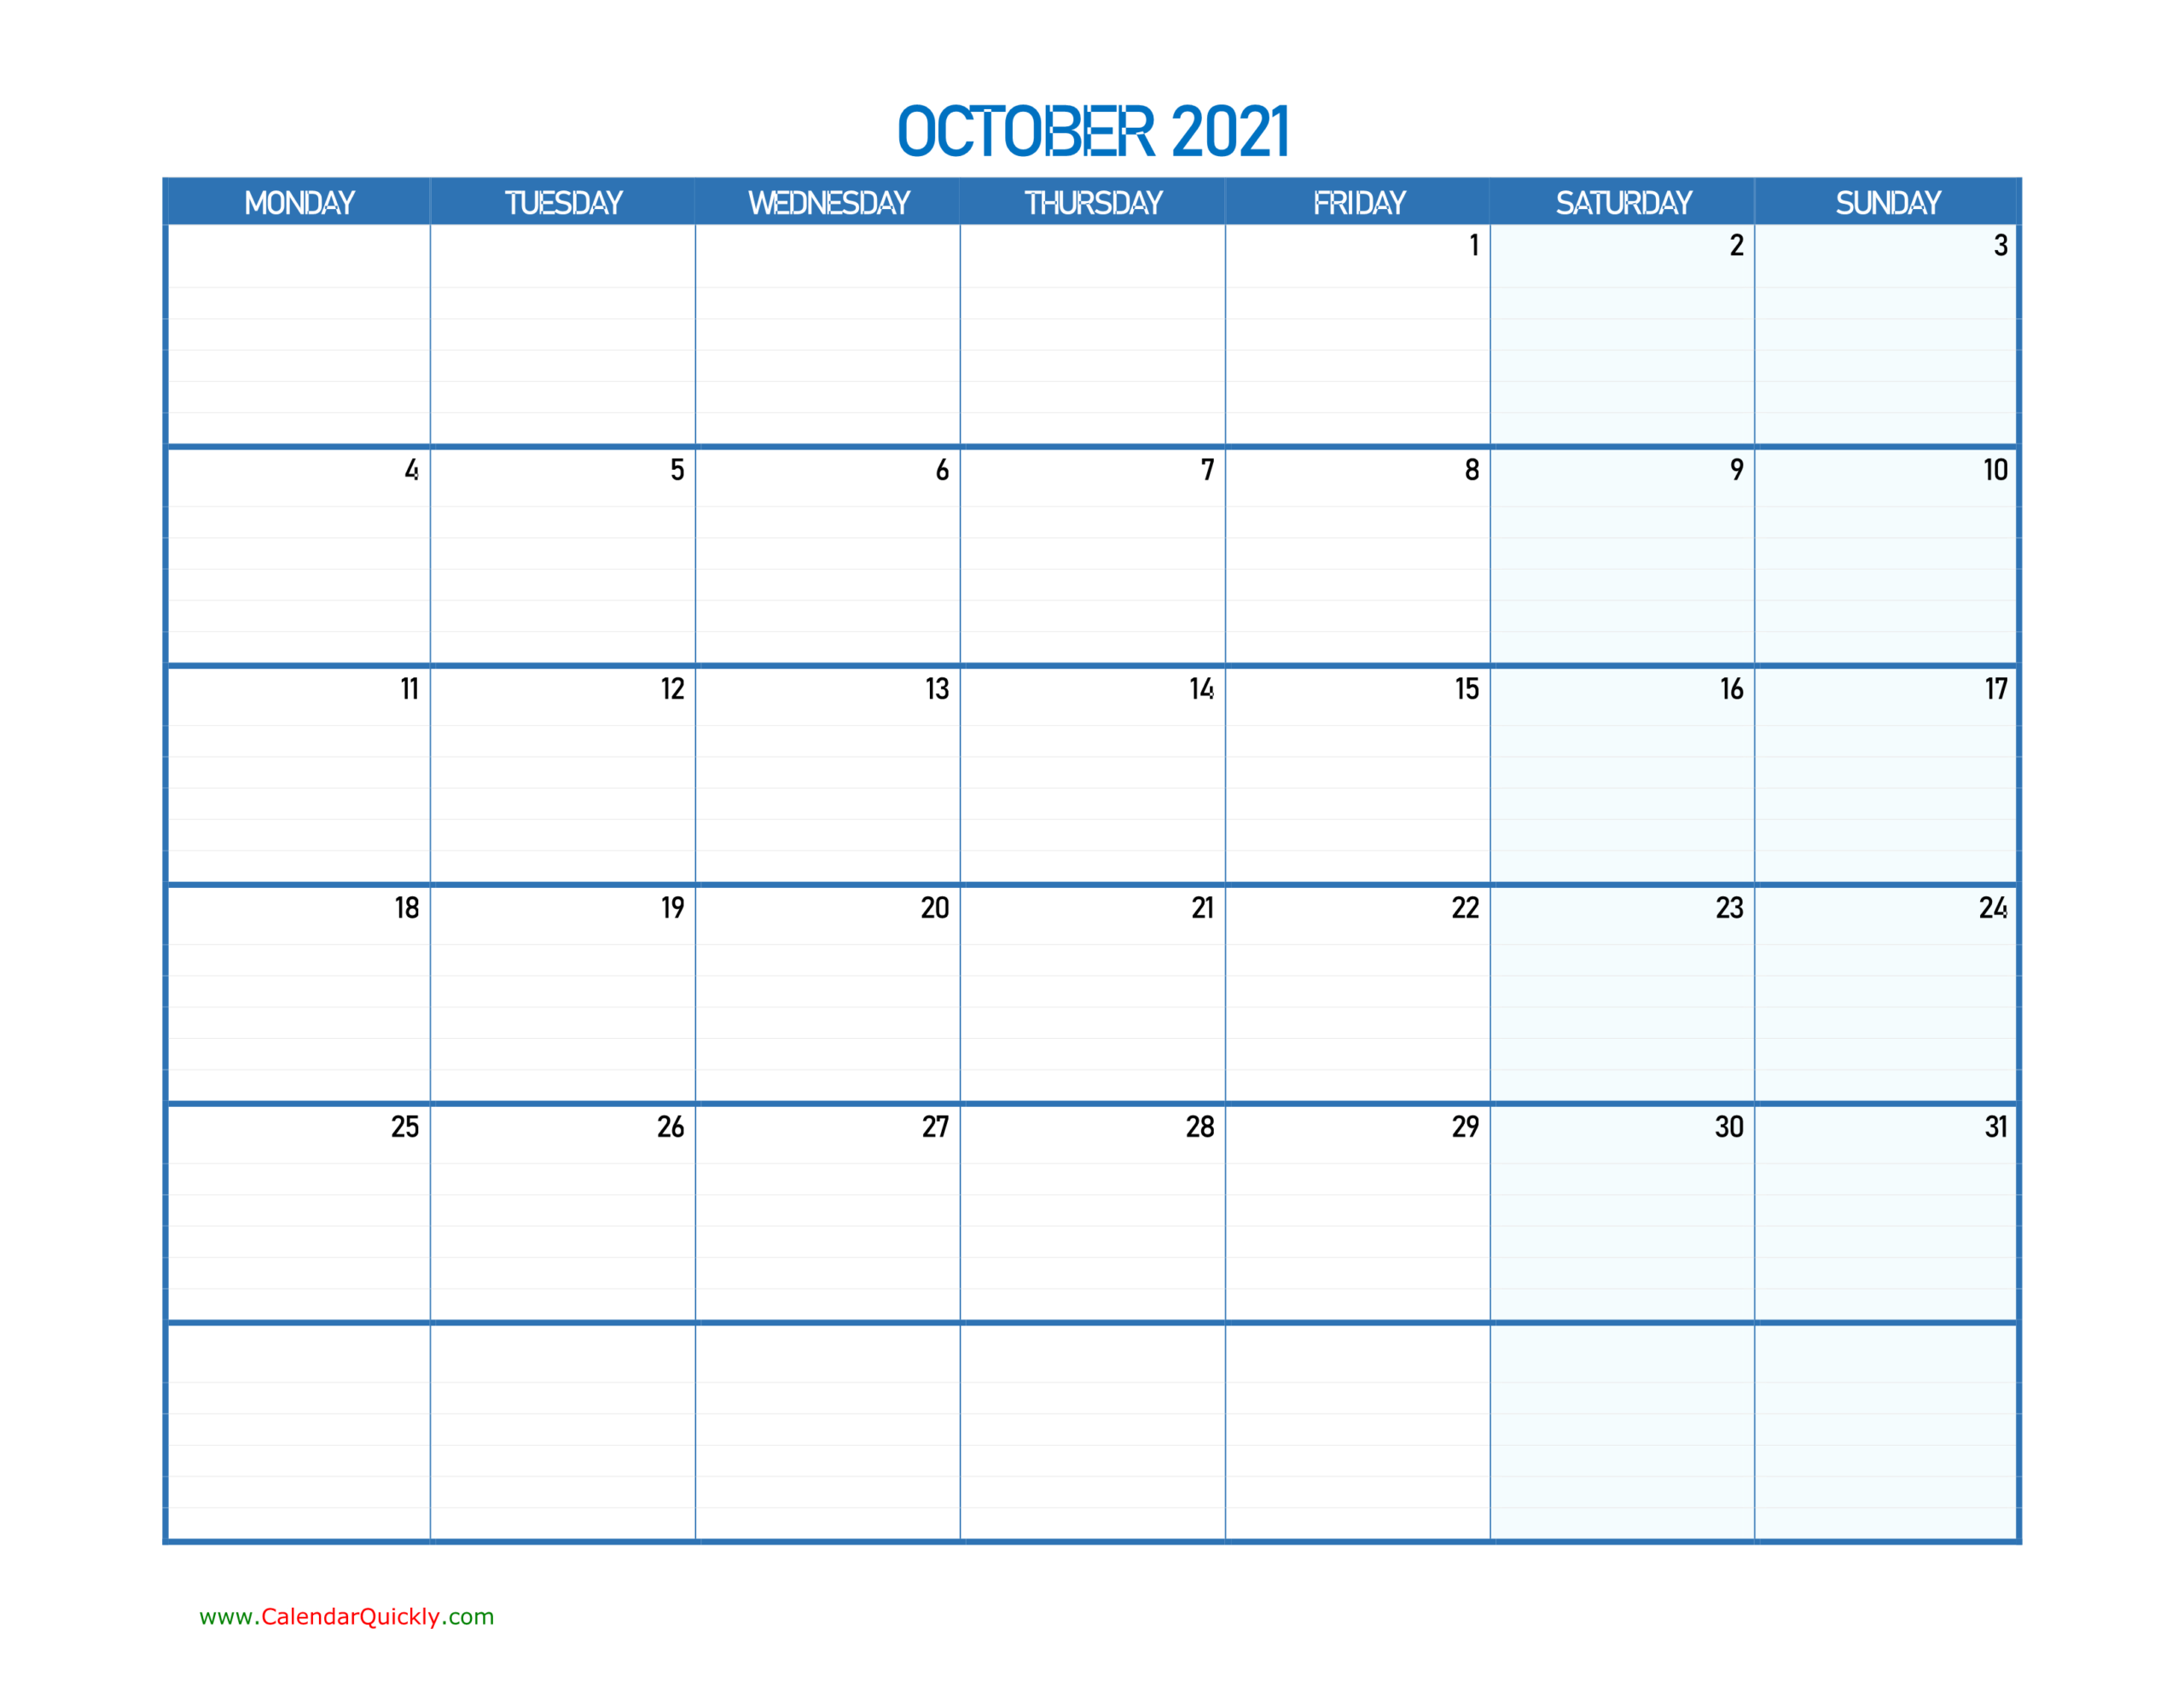 October Monday 2021 Blank Calendar | Calendar Quickly-Free Calender For October 2021 81/2 X 11